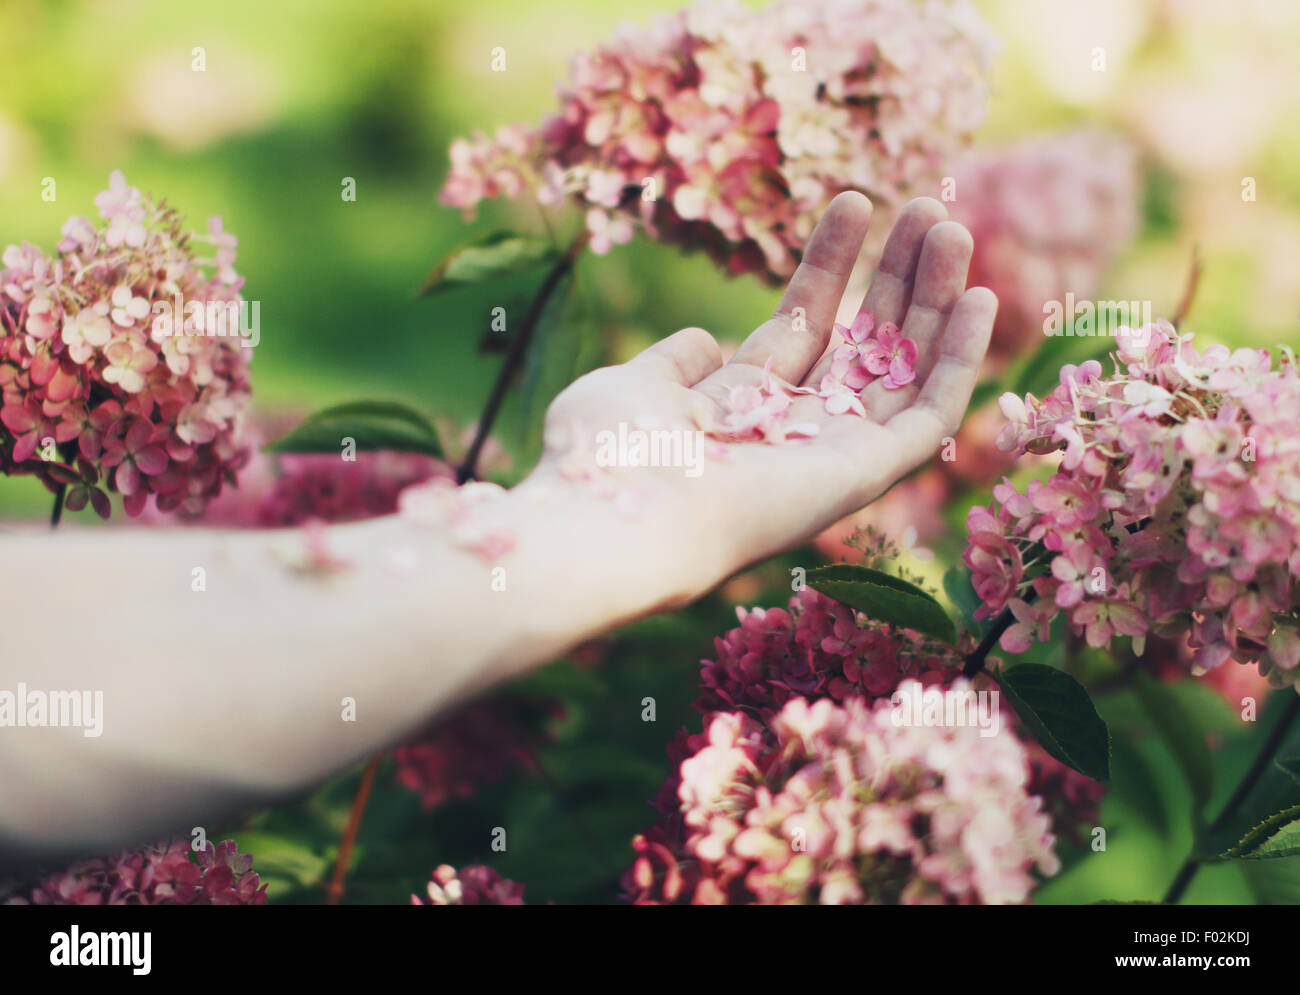 Nahaufnahme eines menschlichen Arms in Blüten bedeckt Stockfoto